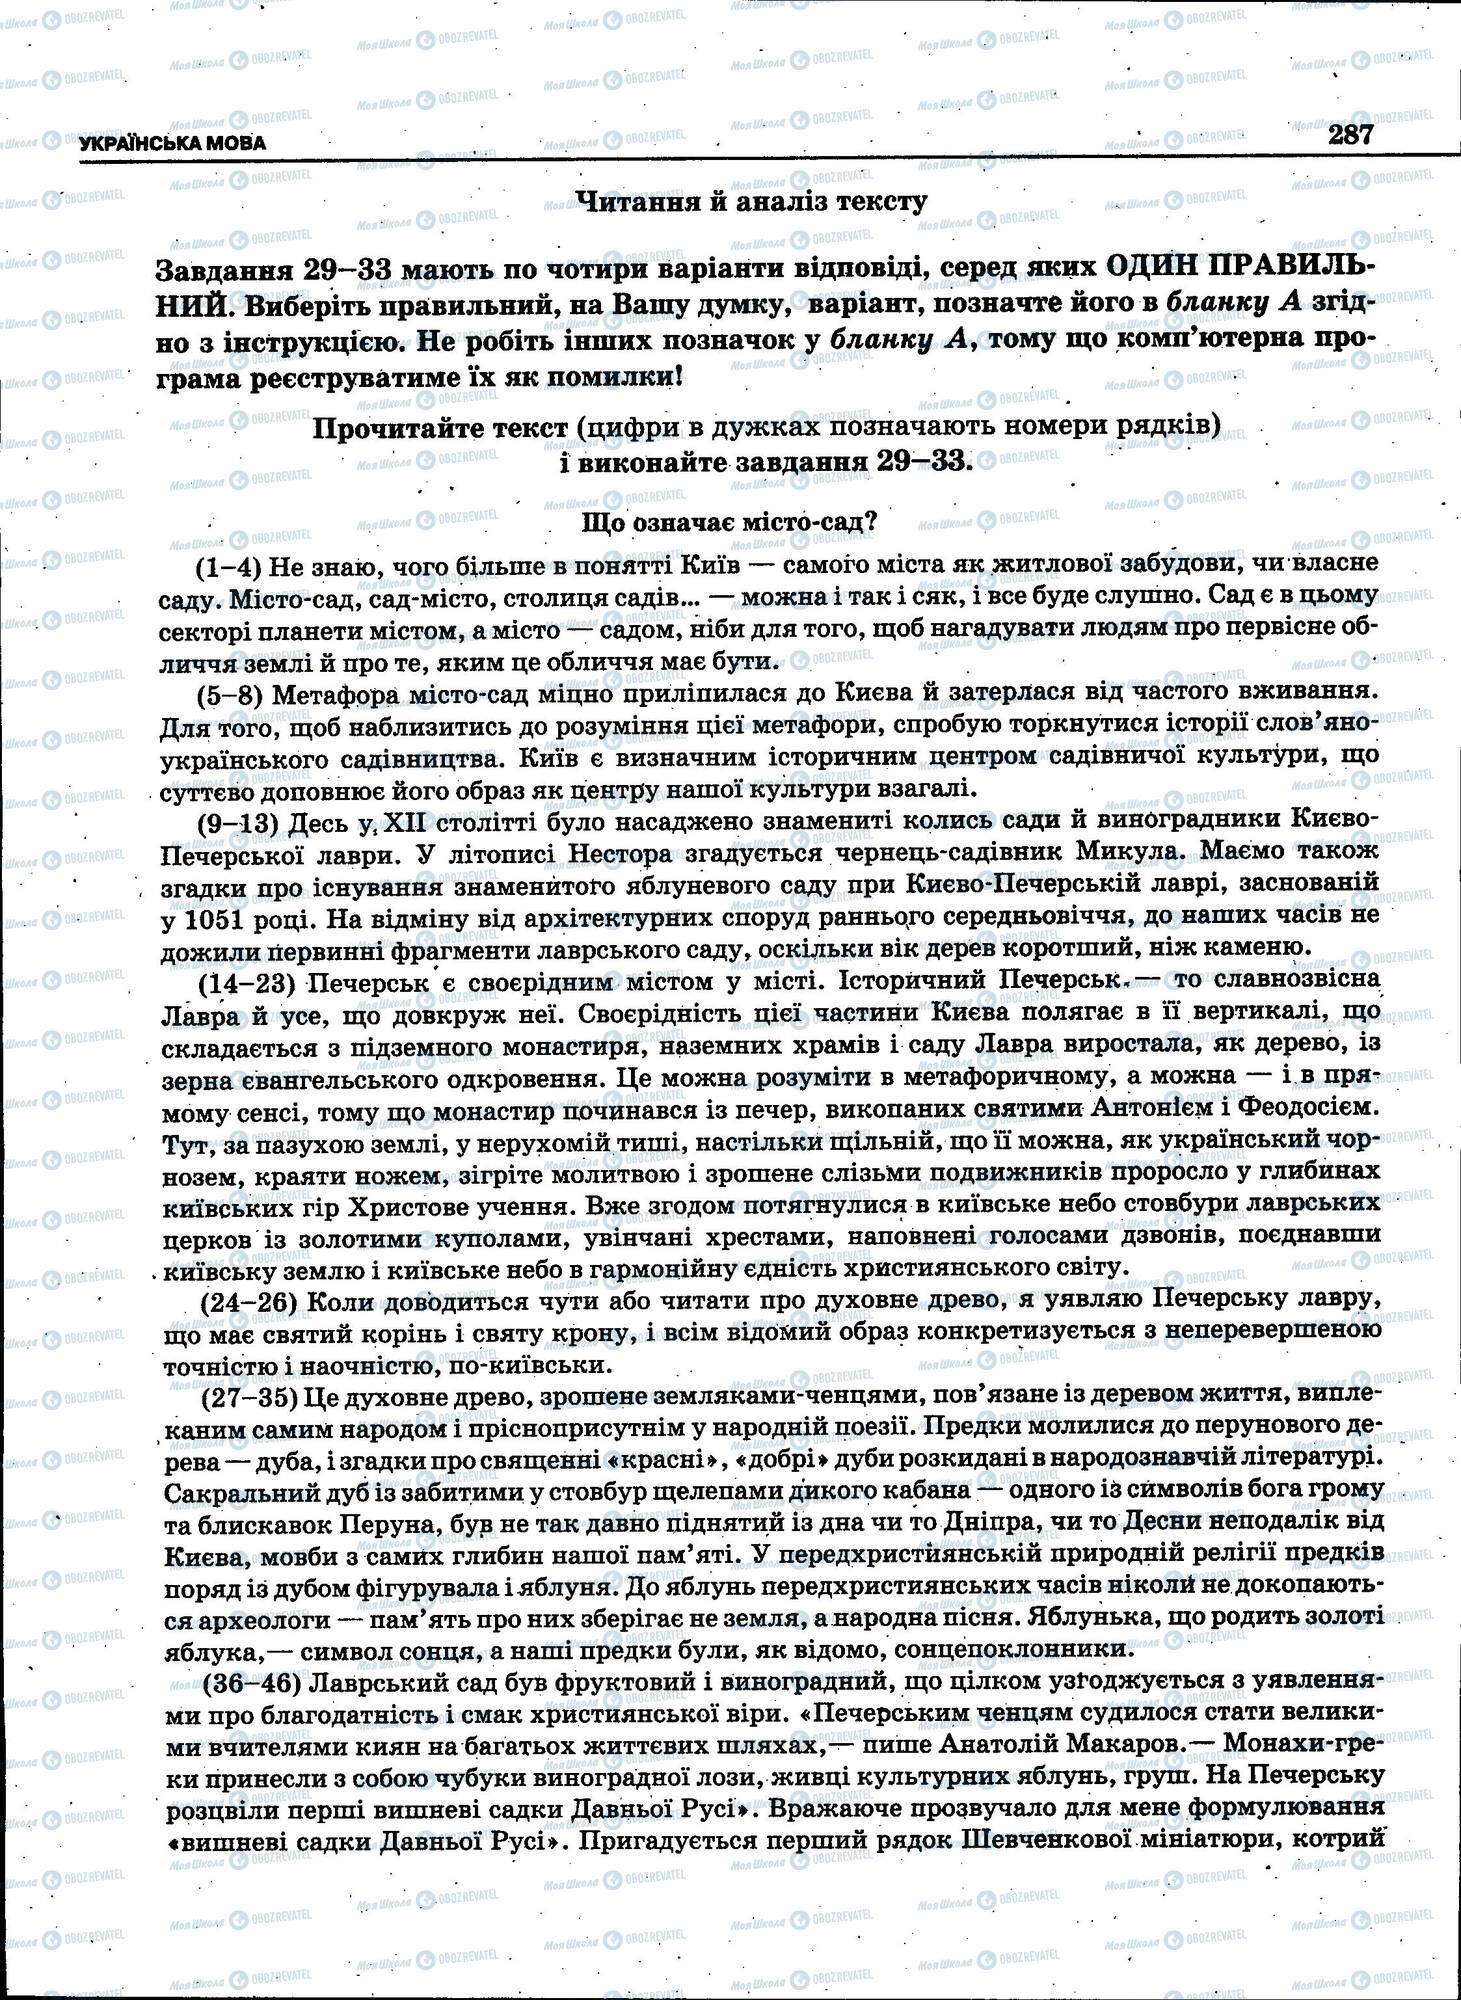 ЗНО Укр мова 11 класс страница 287